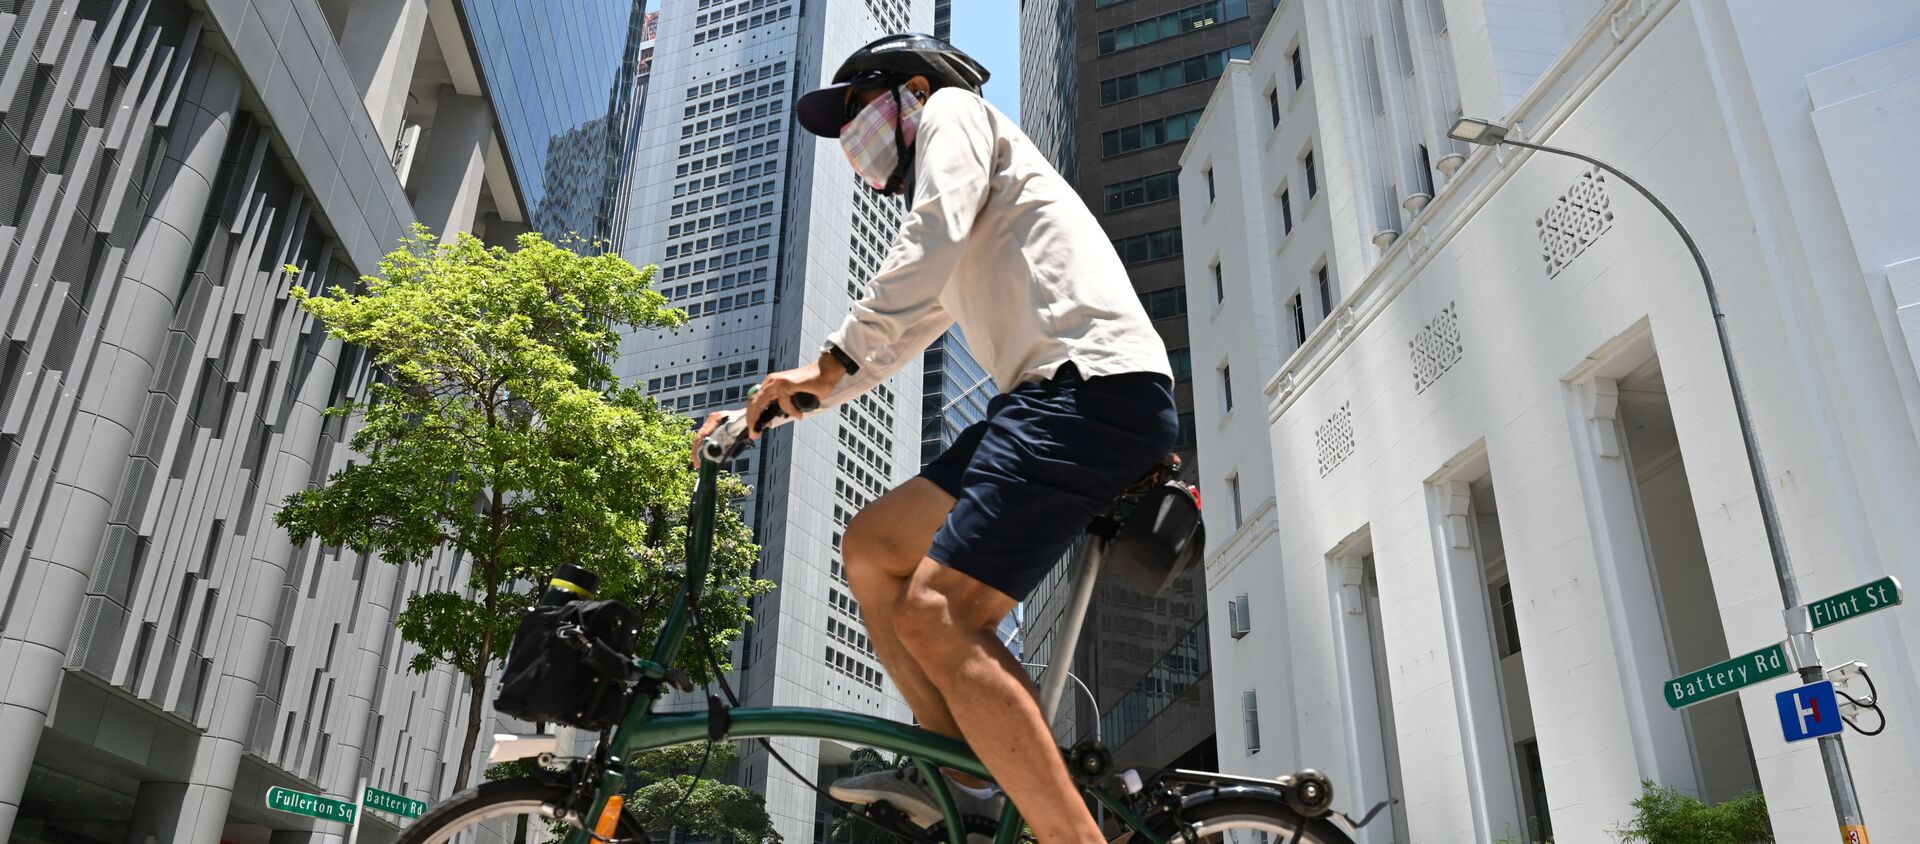 Мужчина едет на велосипеде по улице в Сингапуре  - Sputnik Беларусь, 1920, 27.04.2021